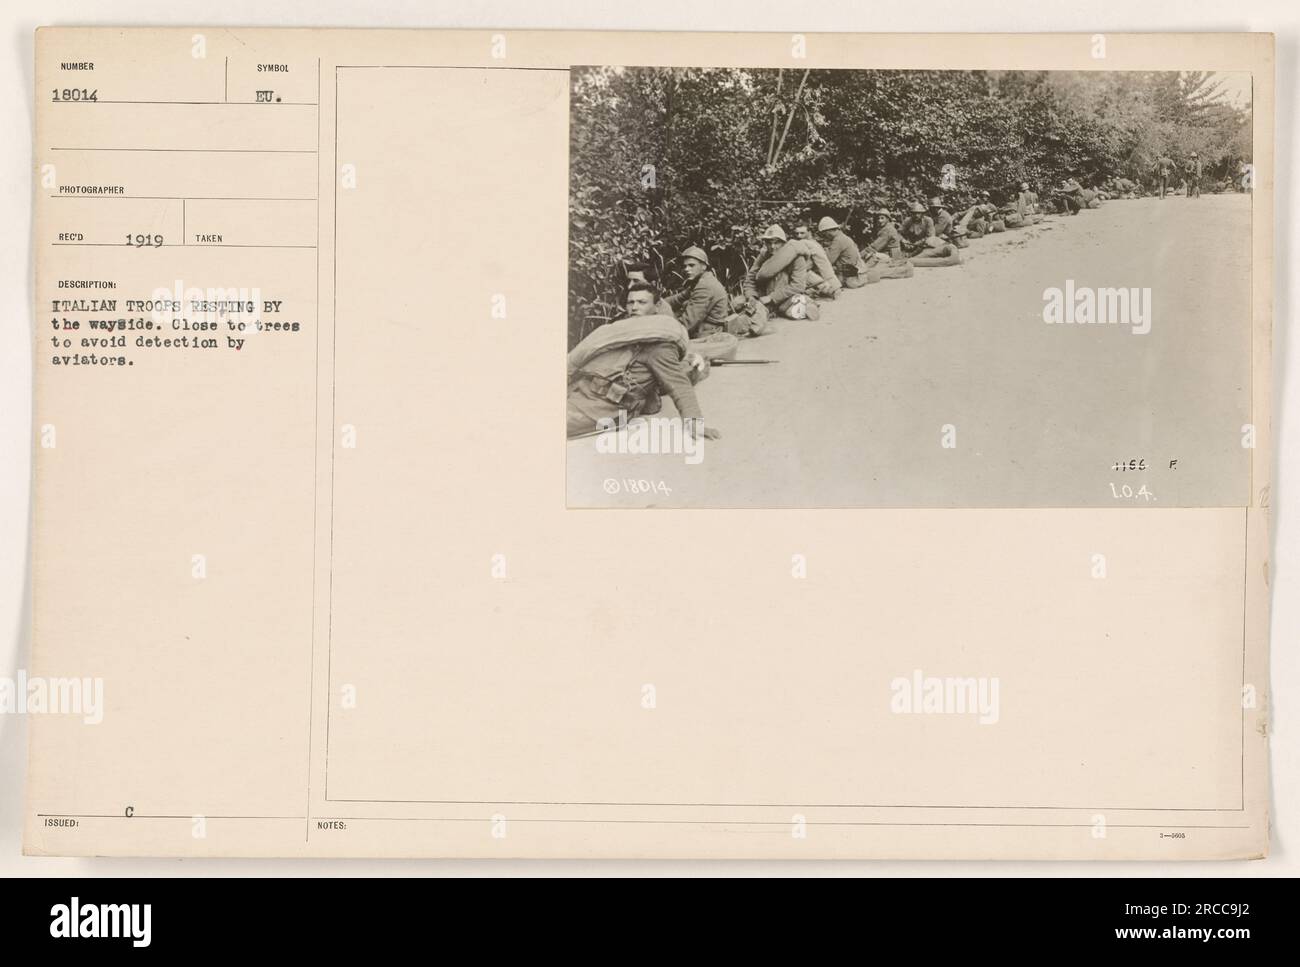 Le truppe italiane fanno una pausa lungo la strada durante la prima guerra mondiale Sono posizionati vicino agli alberi per occultare gli aerei nemici. La foto, contrassegnata come 111-SC-18014, è stata scattata nel 1919 e fa parte di una collezione di attività militari americane durante la guerra. Foto Stock